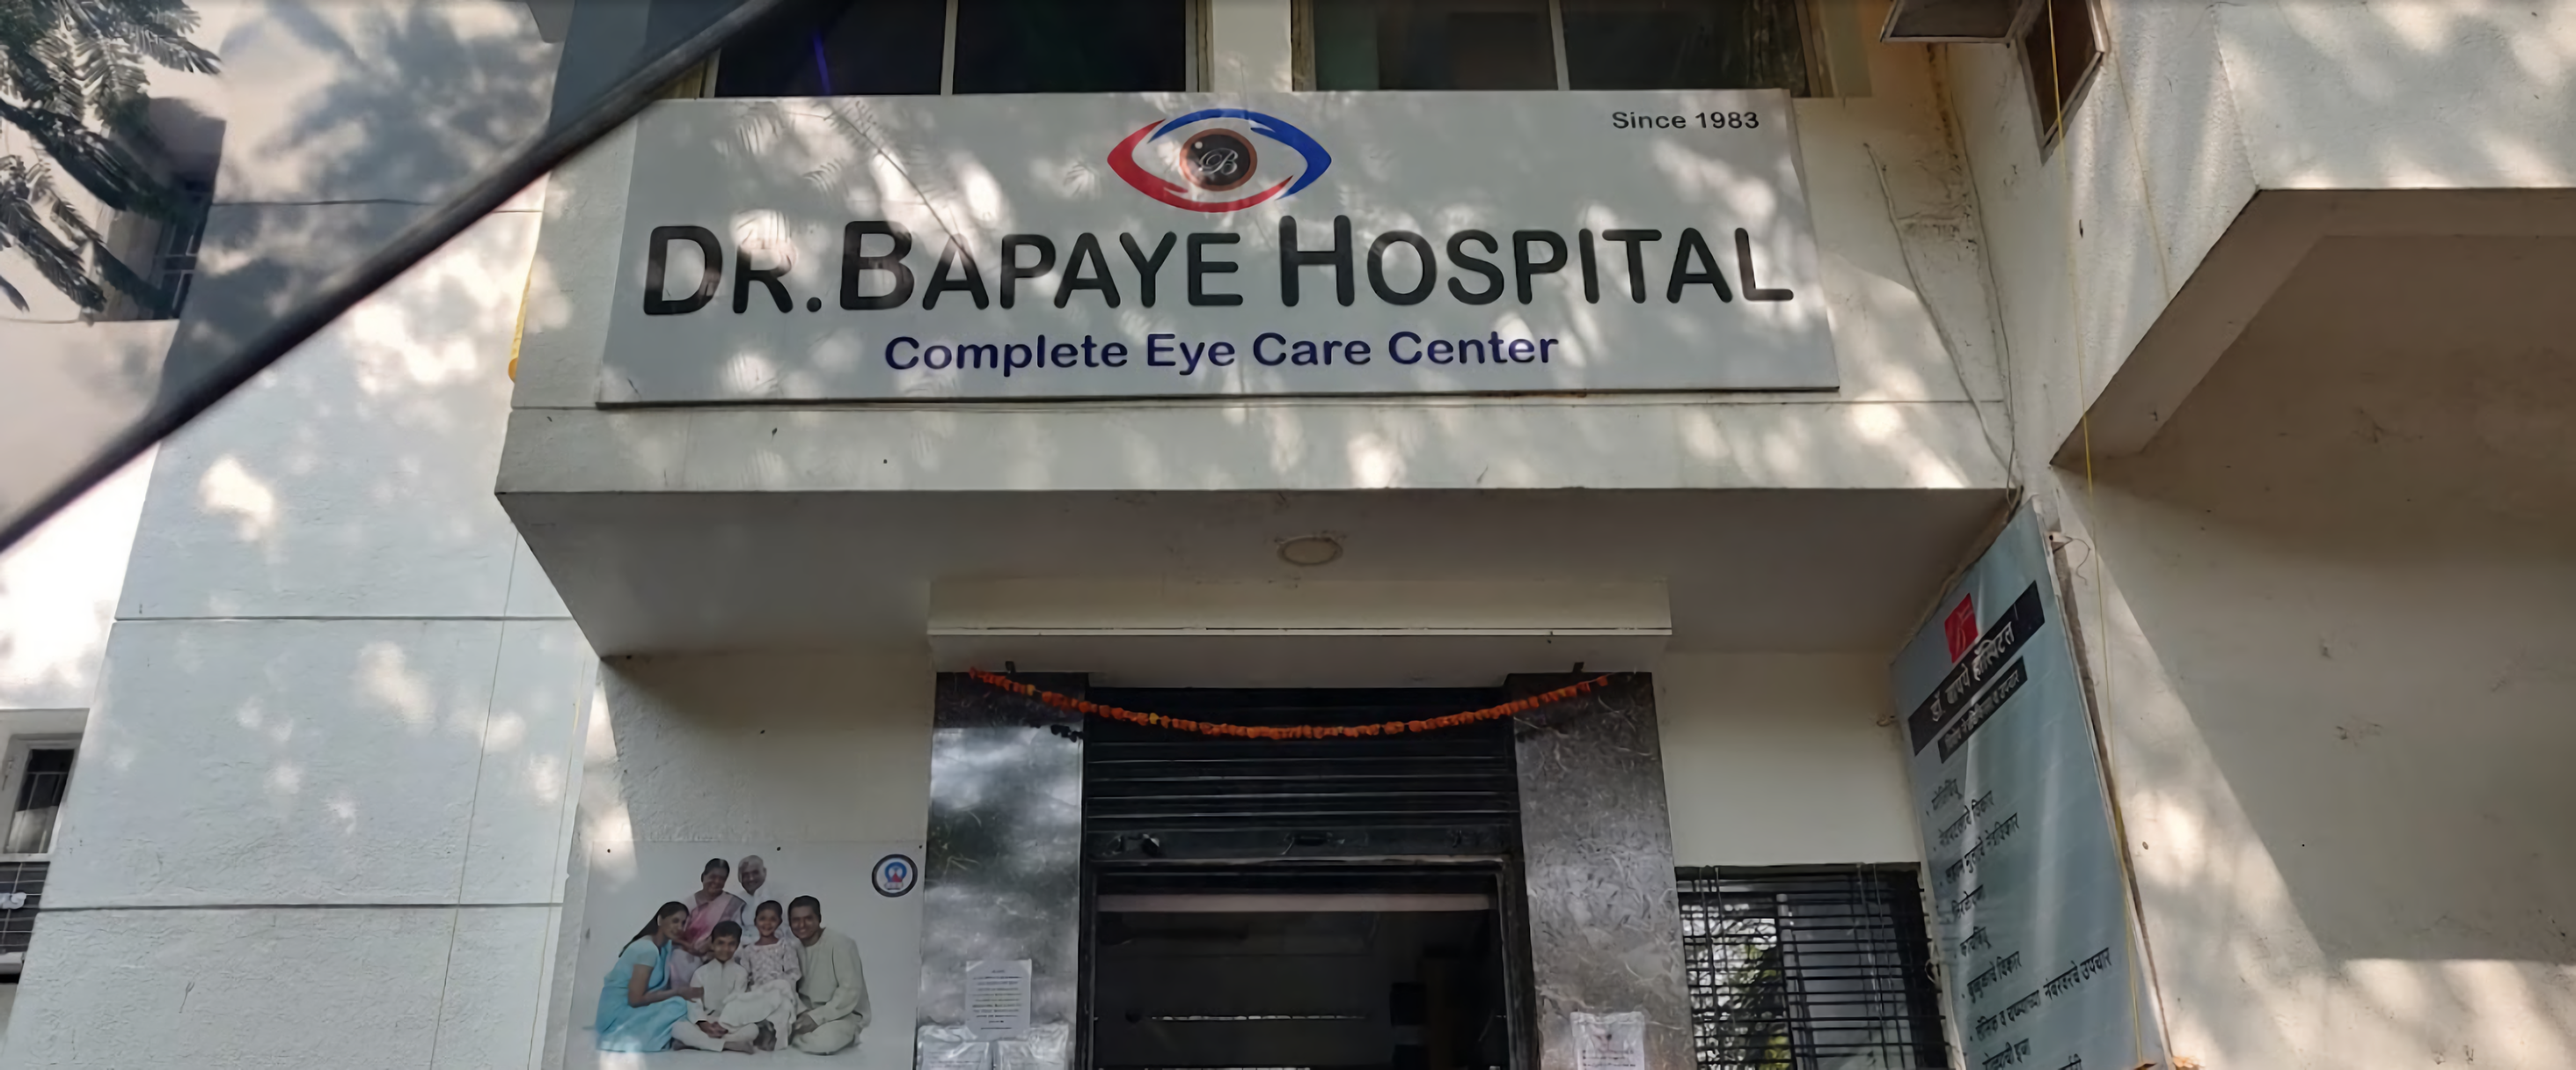 Dr. Bapaye Hospital